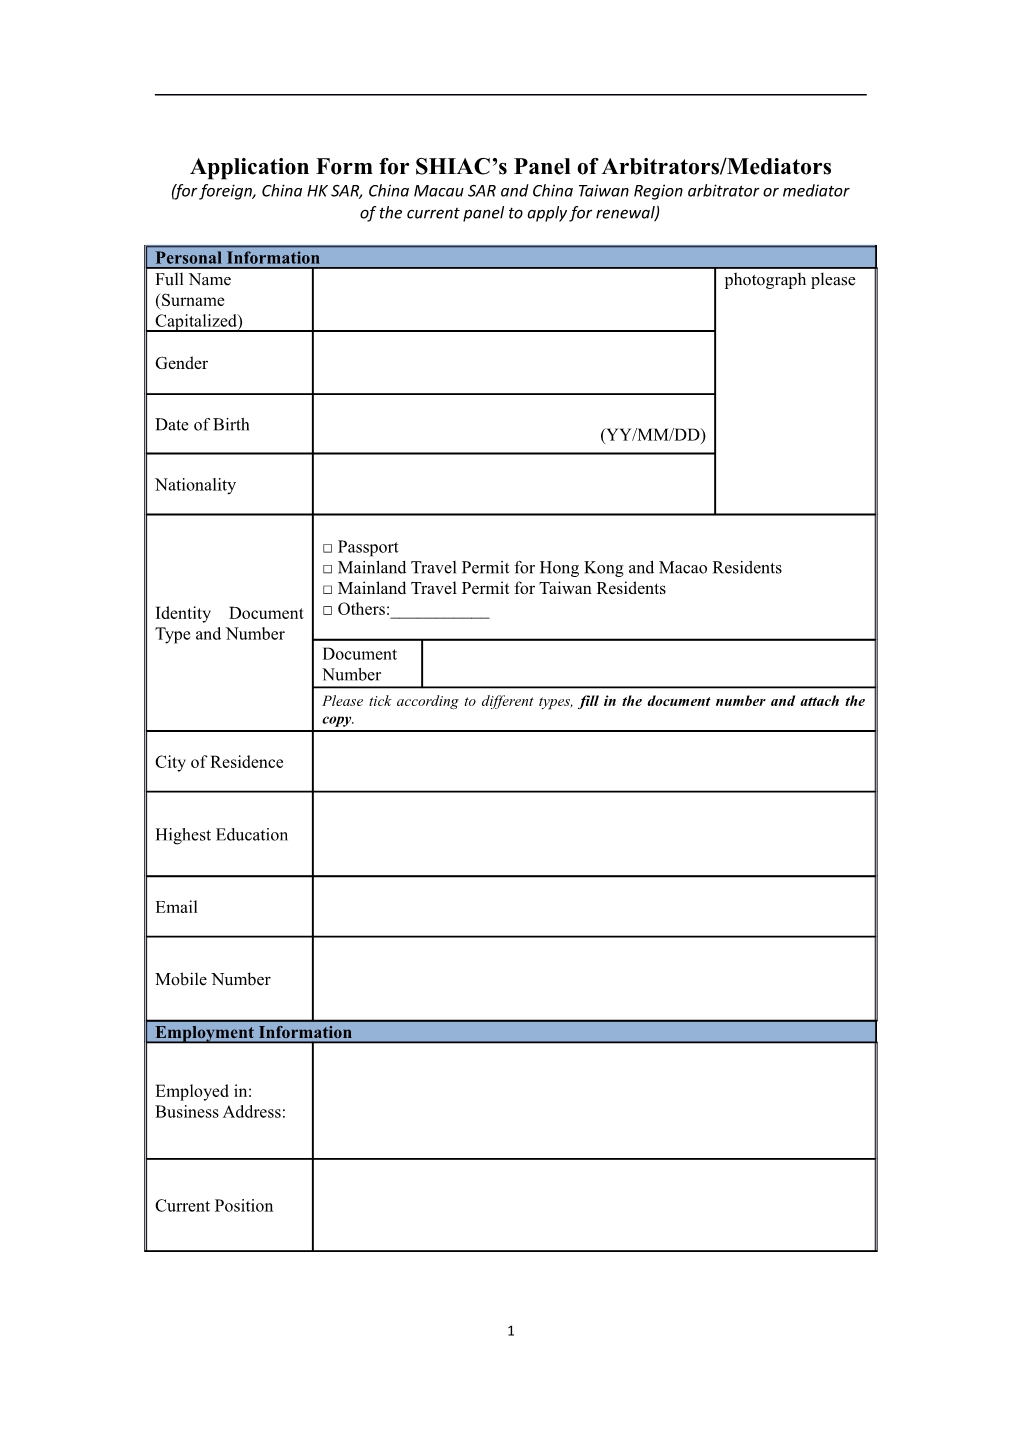 Application Form for SHIAC S Panel of Arbitrators/Mediators